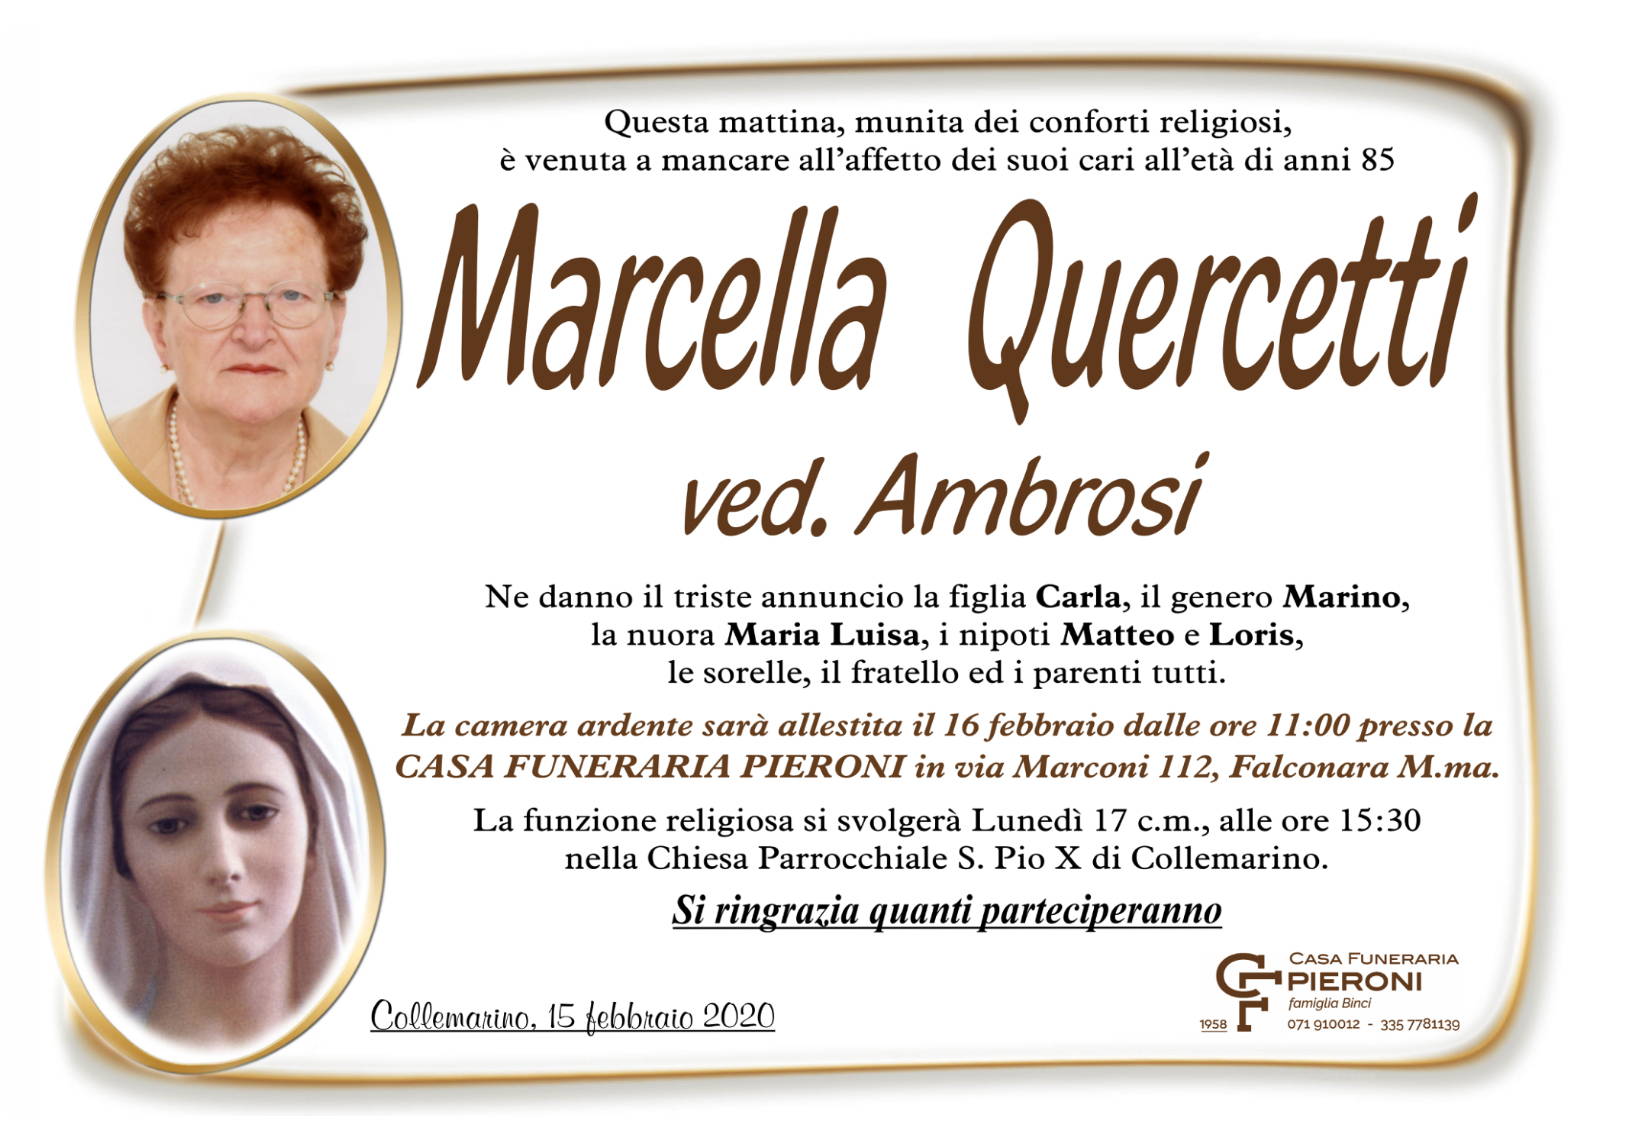 Marcella Quercetti